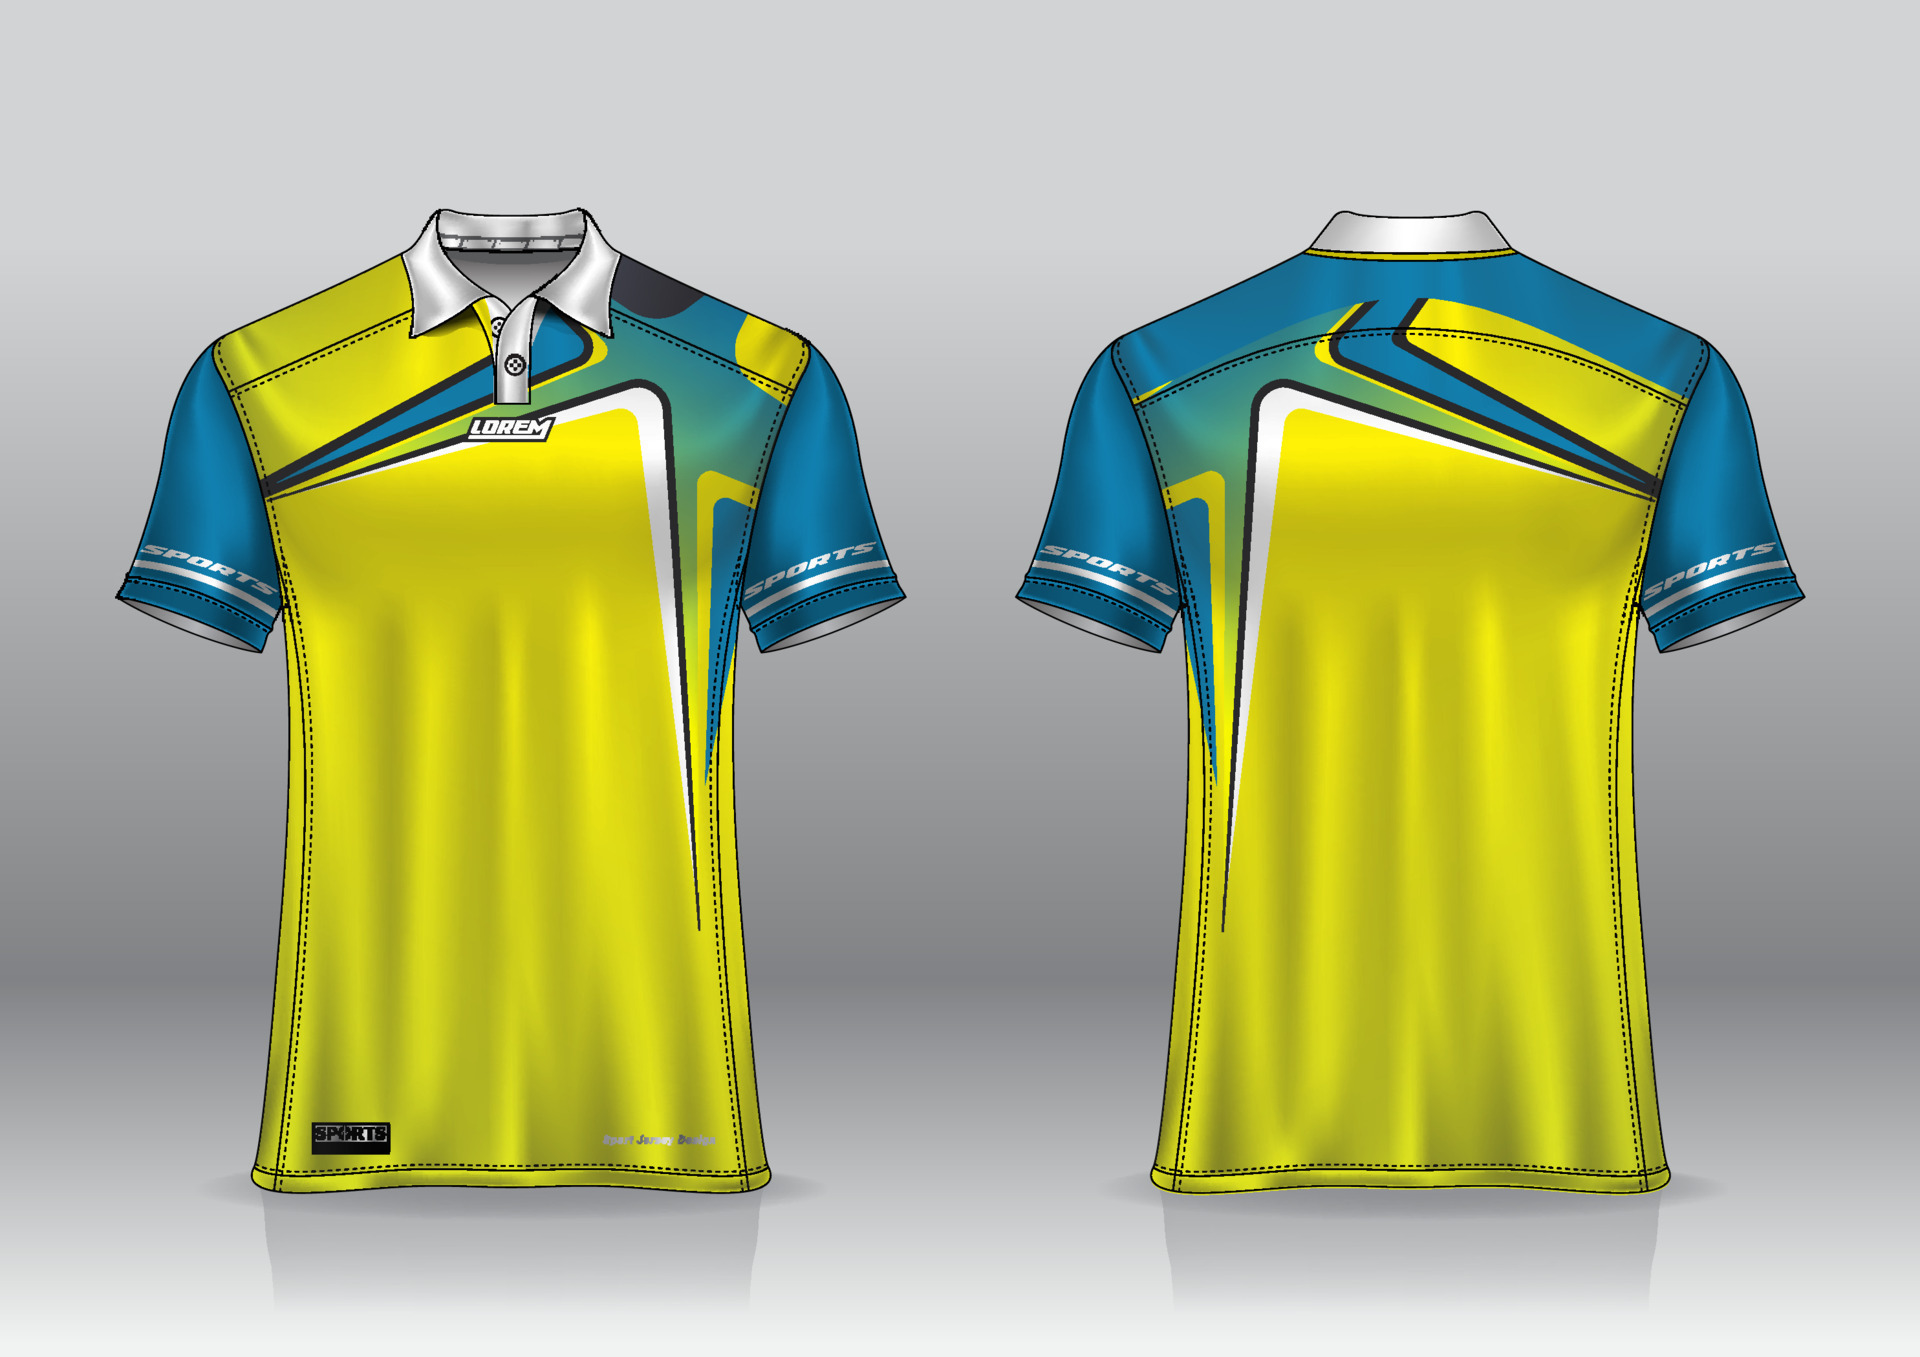 polo shirt uniform design for outdoor sports 8028481 Vector Art at Vecteezy